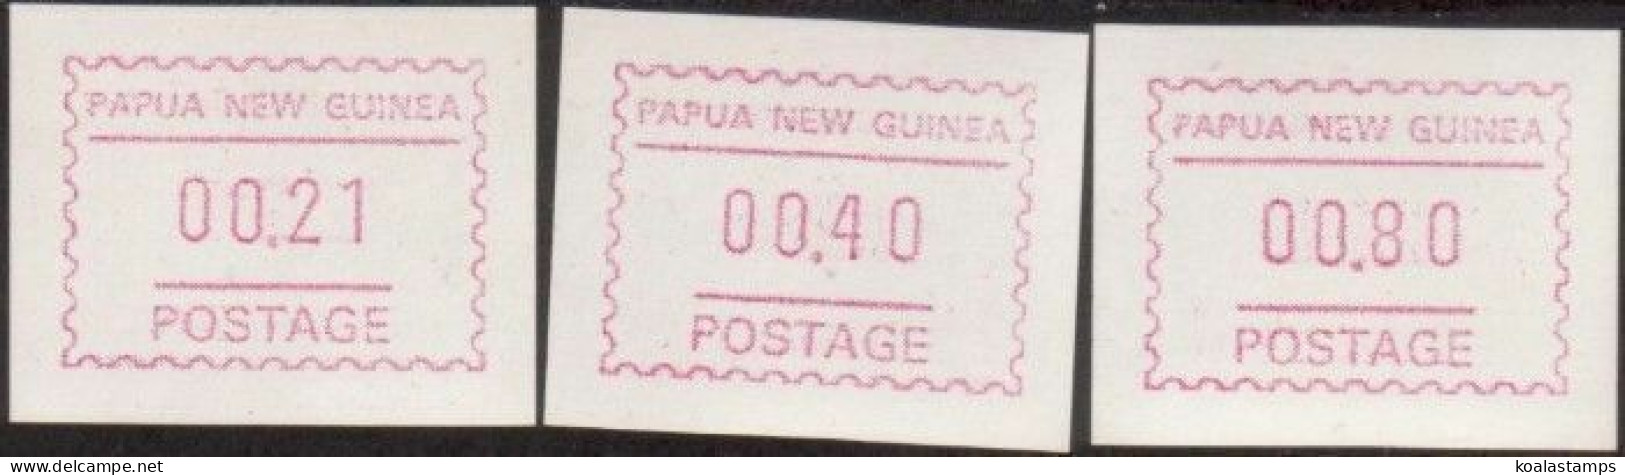 Papua New Guinea 1991 SG631f Framas Set MNH - Papua New Guinea